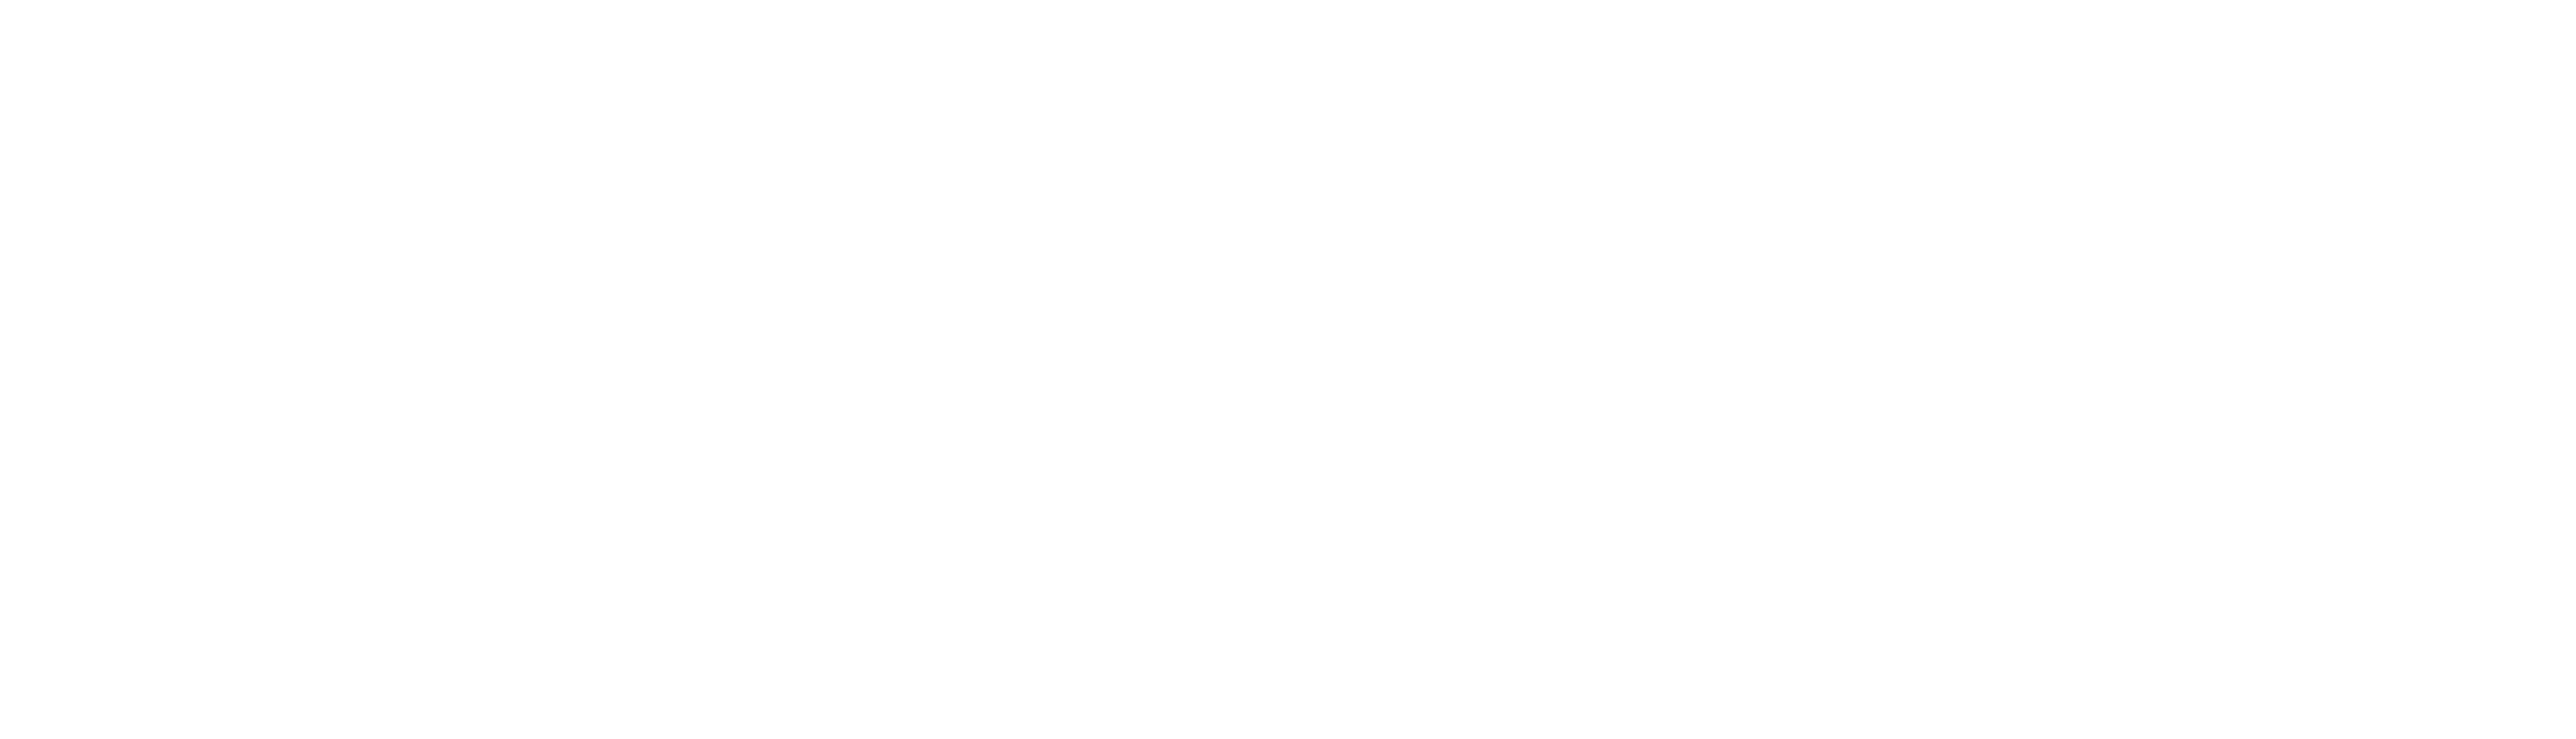 Man vs. Child: Chef Showdown logo